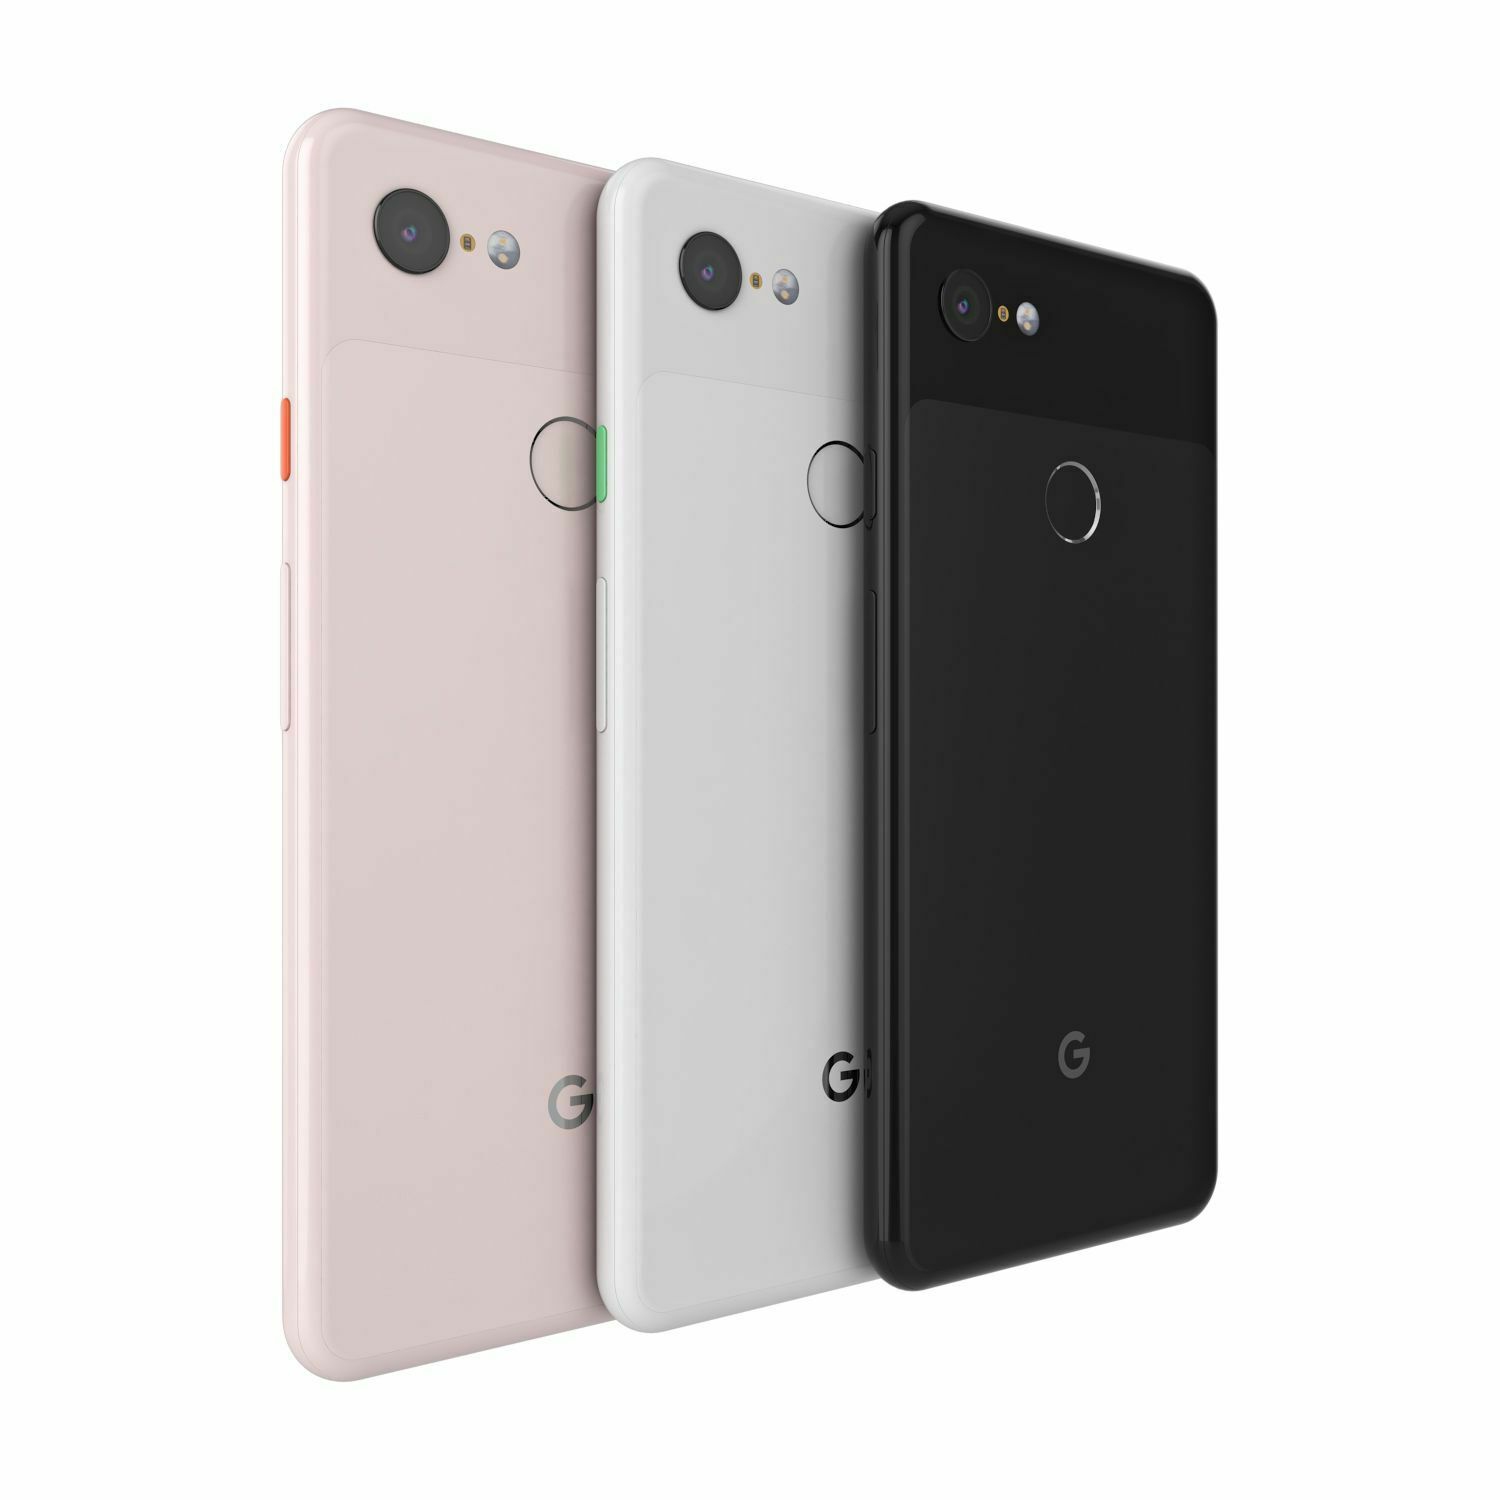 Google Pixel 3 XL 64GB Smartphone - Just Black - Unlocked - New